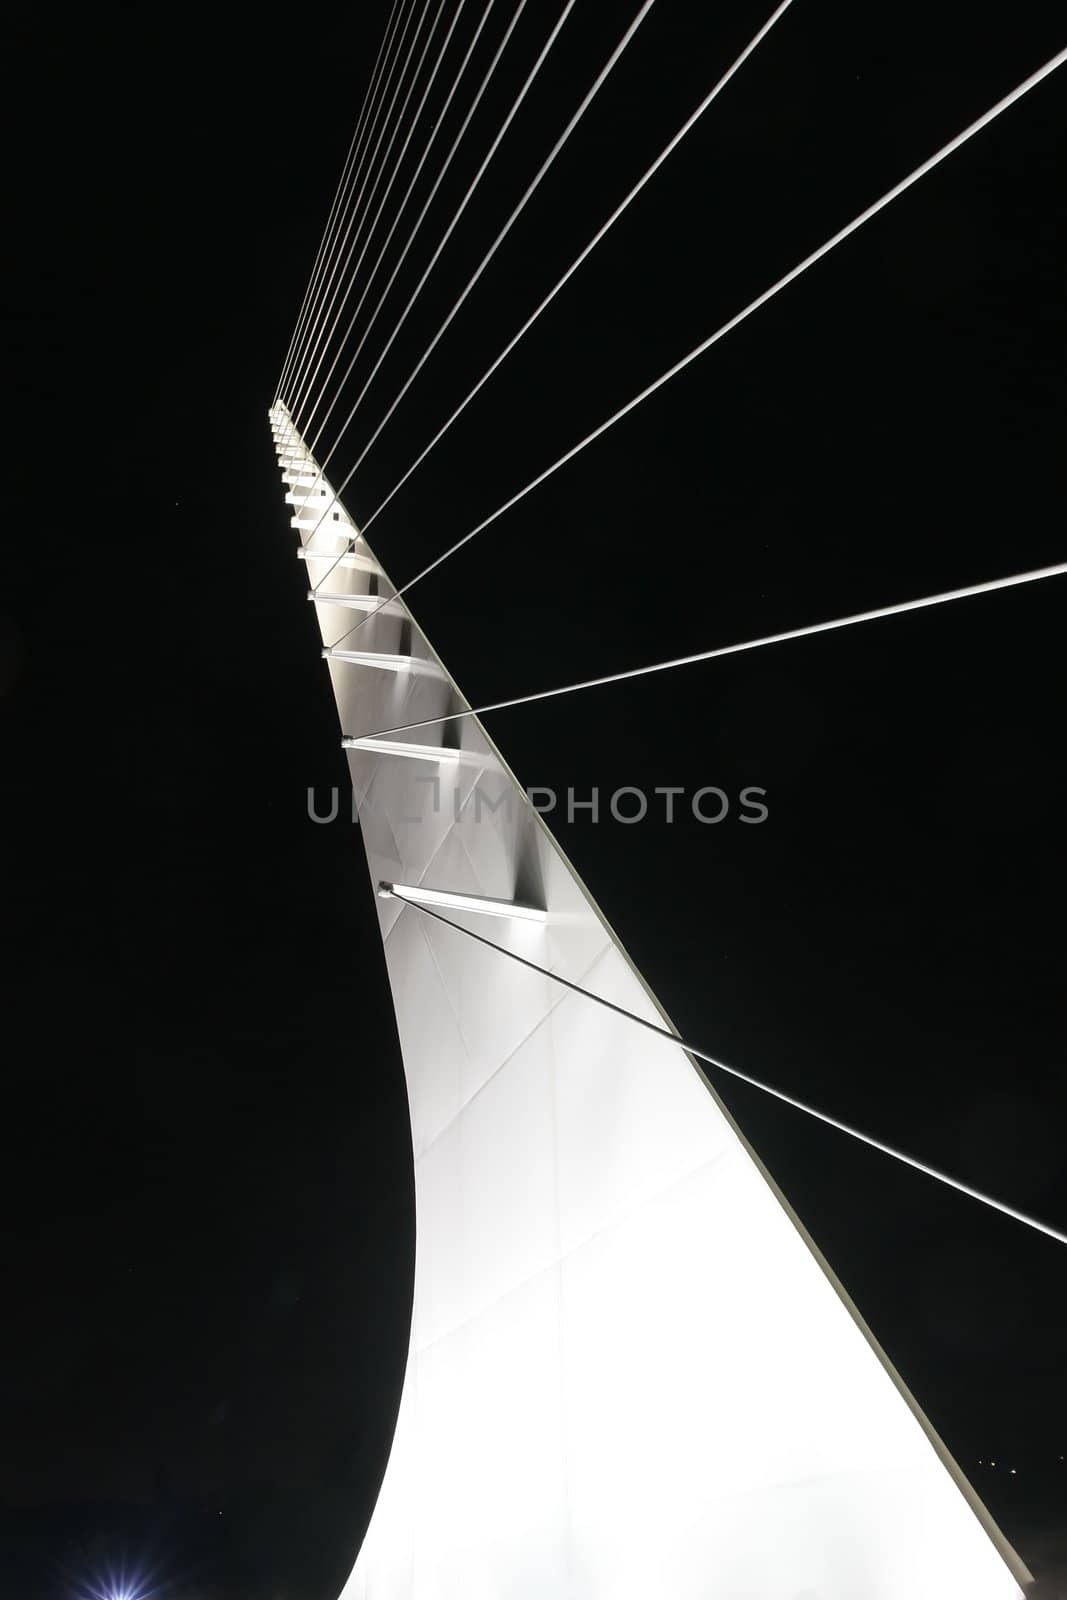 Santiago Calatrava designed this Sundial Bridge at Turtle Bay, Redding, California.